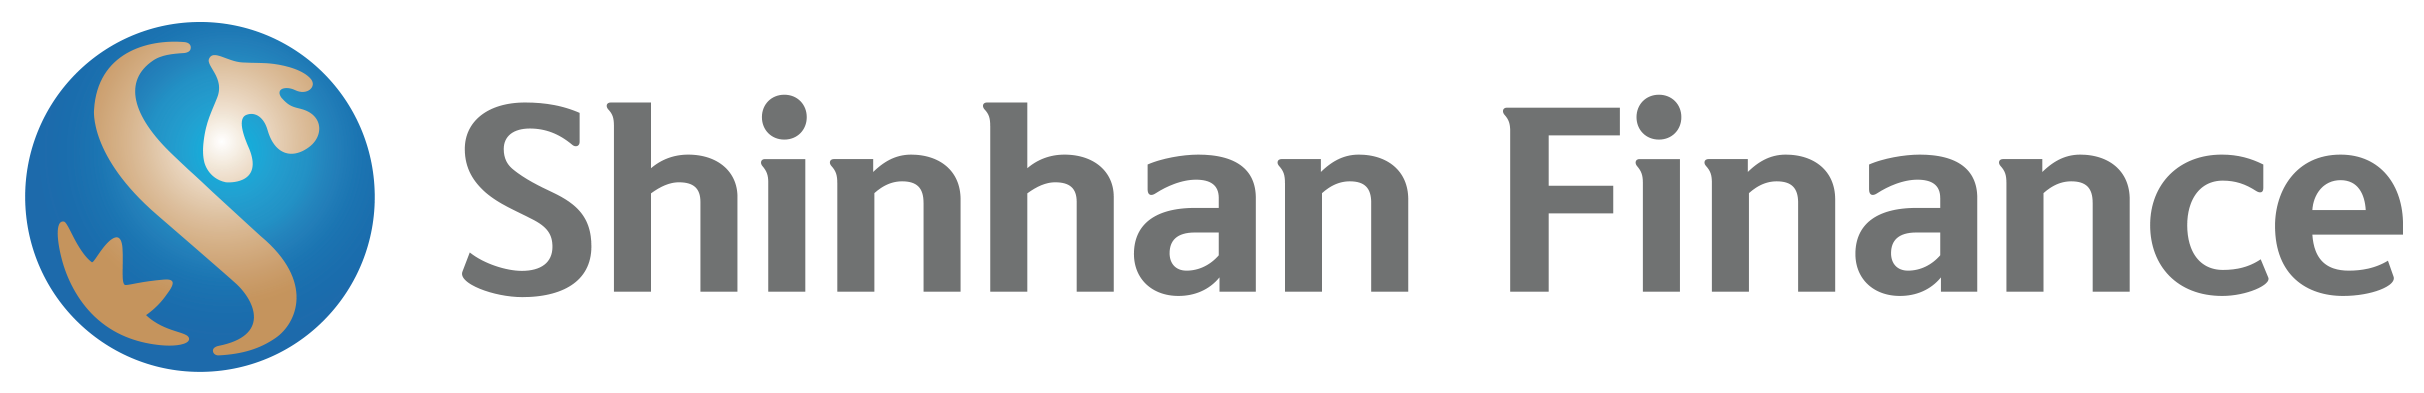 Shinhanbank Việt Nam – Hỗ trợ tài chính